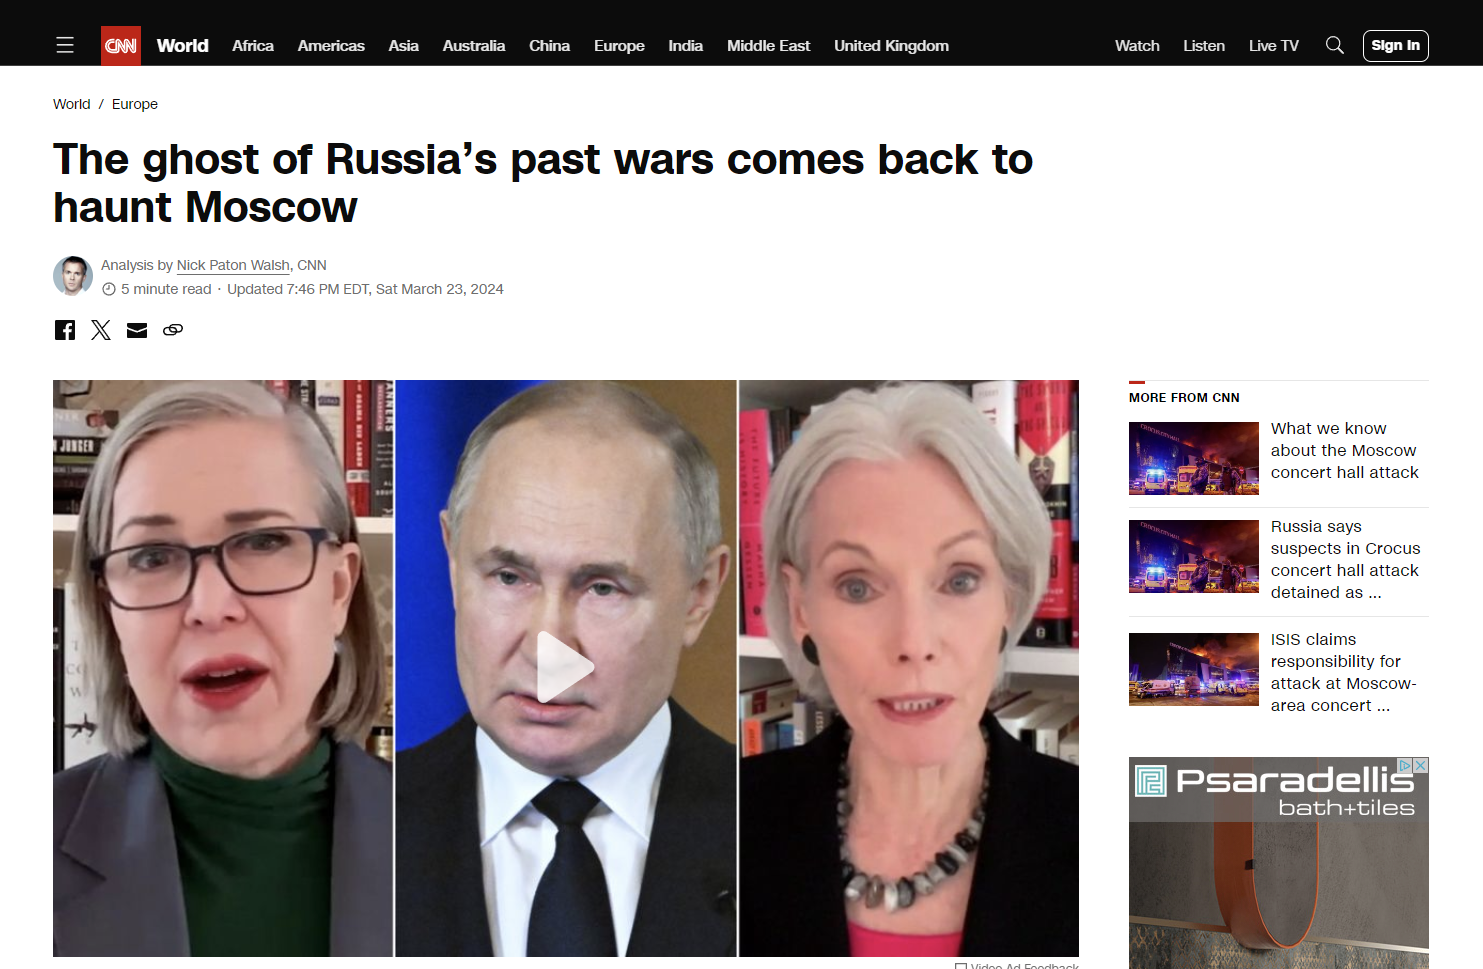 Ανάλυση CNN: Το φάντασμα των παλιών πολέμων της Ρωσίας επιστρέφει για να κυνηγήσει τη Μόσχα